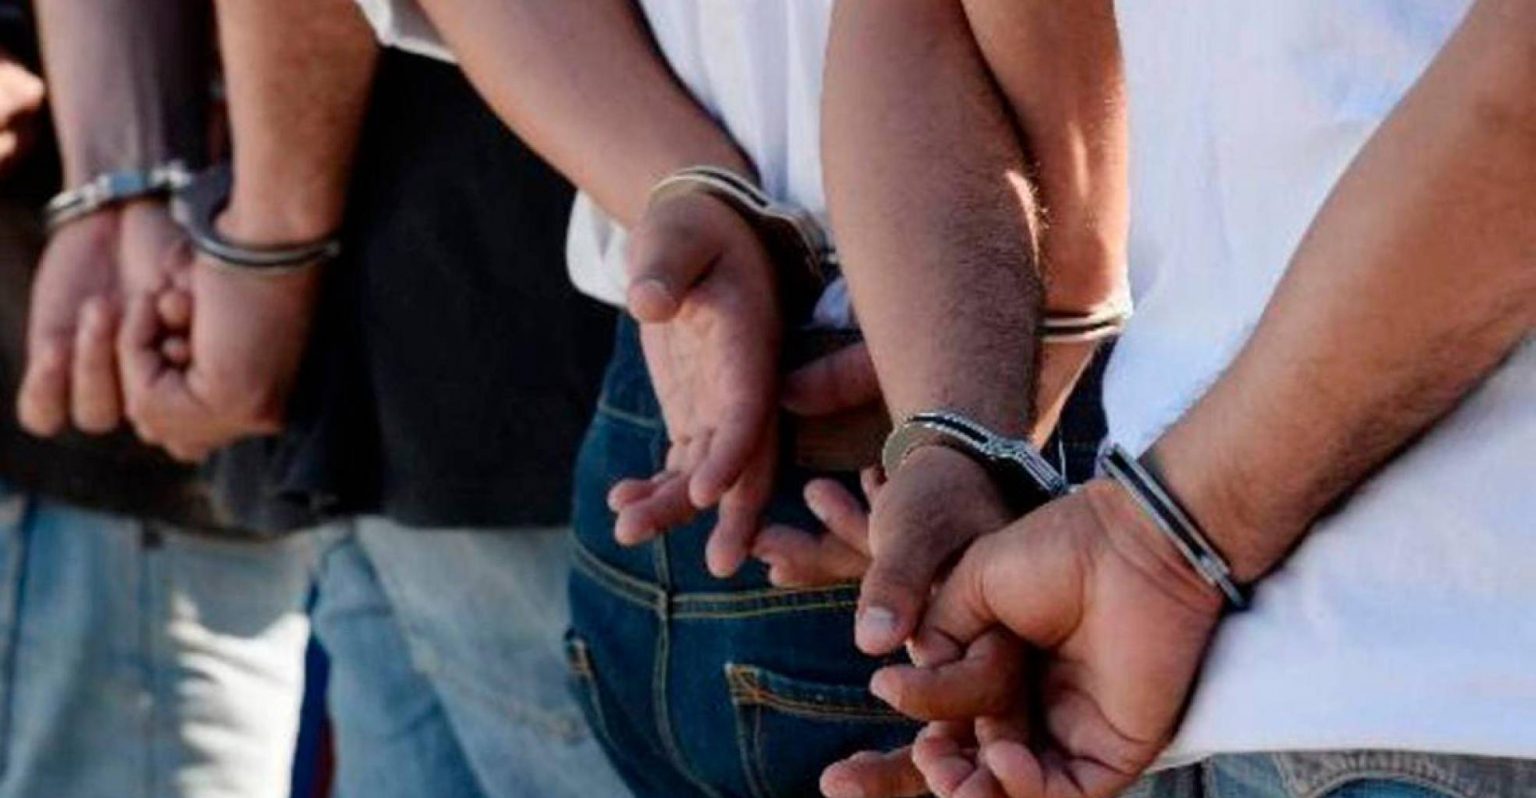 Por exhibicionistas: siete personas detenidas por actos lascivos en feria tachirense